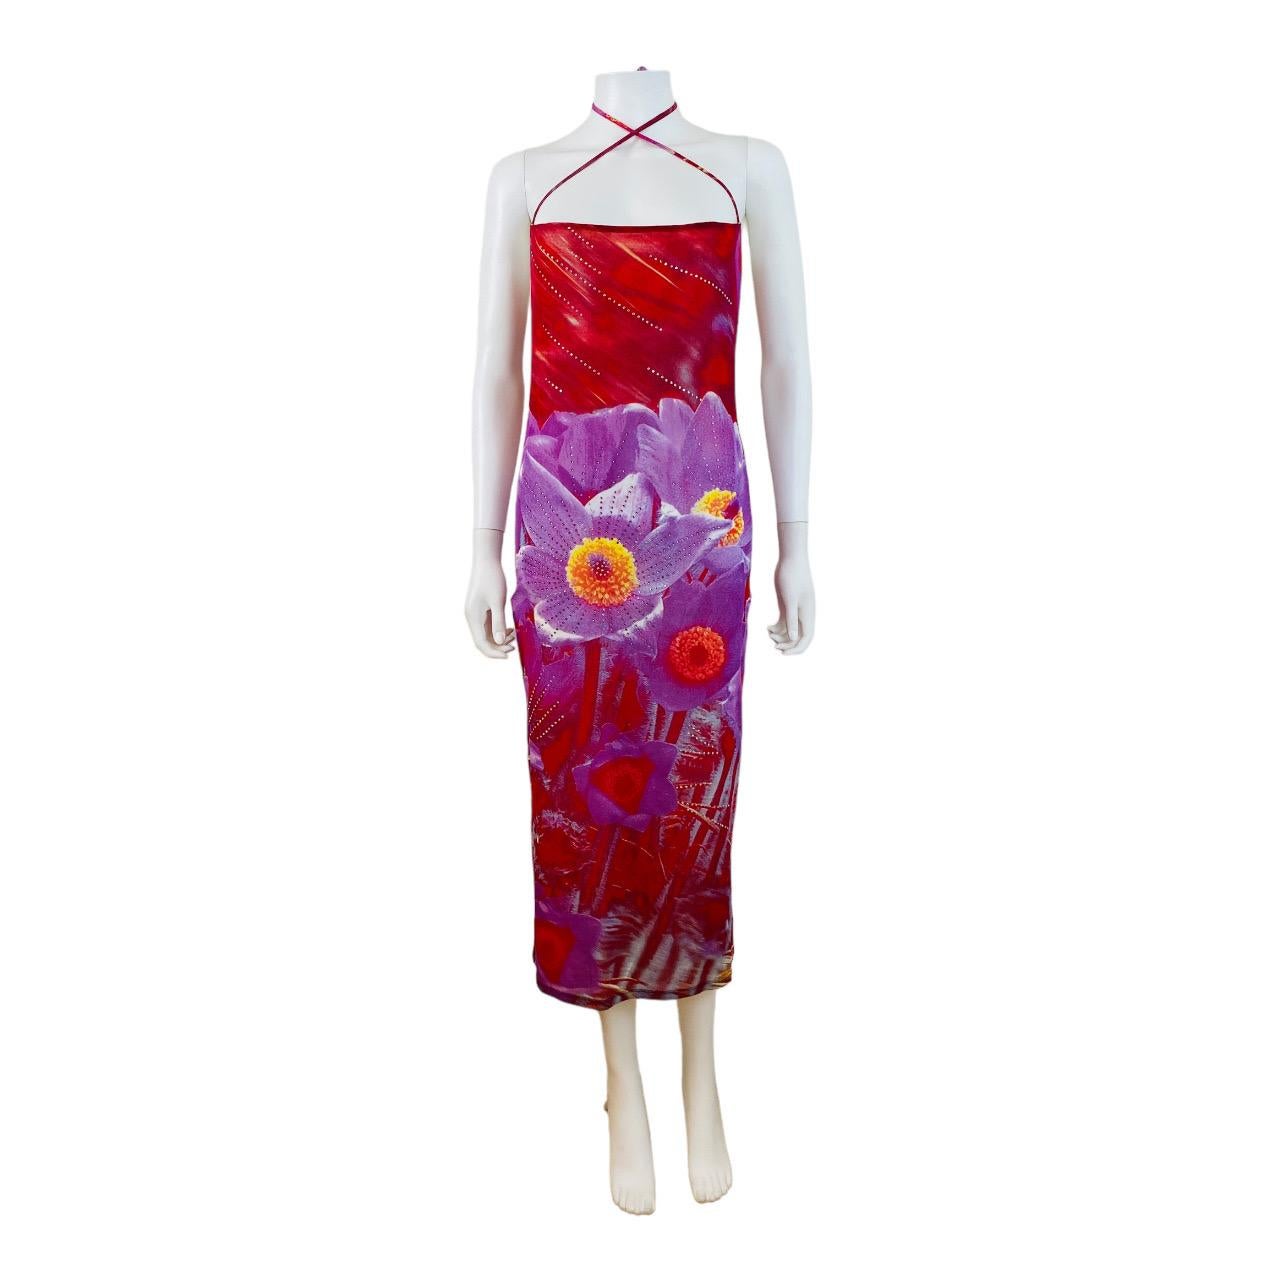 Robe S/S 2000 Roberto Cavalli (présentée épinglée sur un mannequin)
Tissu en maille rouge audacieux avec imprimé floral violet surdimensionné, rehaussé de cristaux.
Coupe carrée sur le buste avec des bretelles qui se croisent sur le devant du cou et